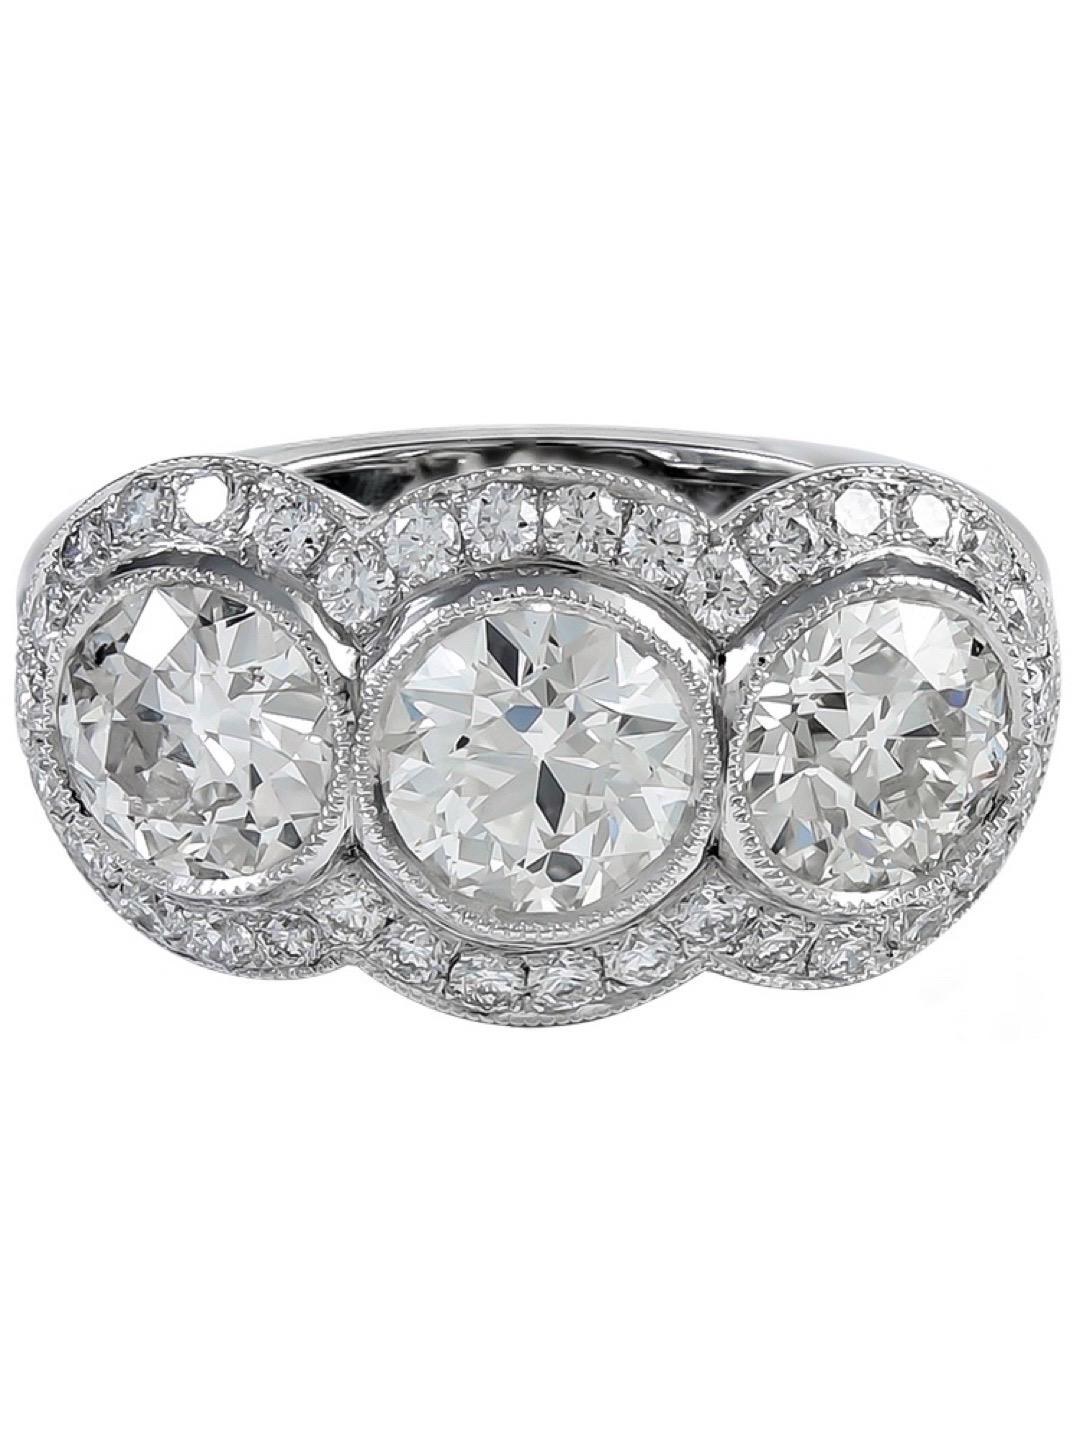 Sophia D. 3.68 Carat Three-Stone Platinum Ring For Sale